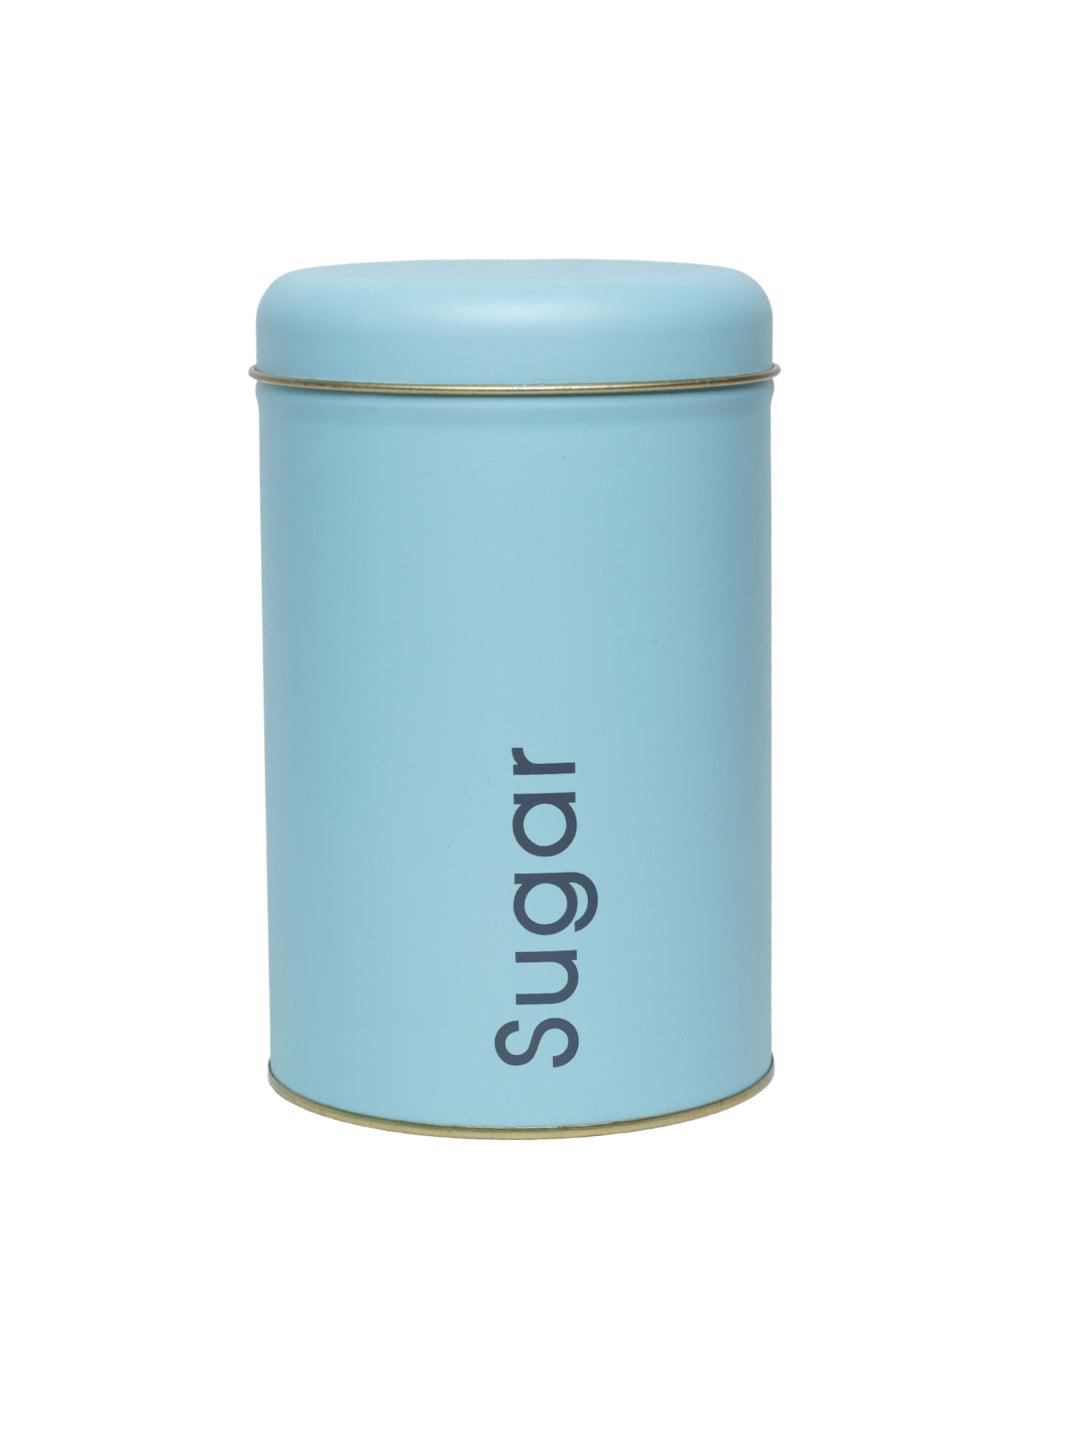 Coffee, Tea & Sugar - Metal Jar Set Of 3, Turquoise Color, 1450Ml - MARKET 99